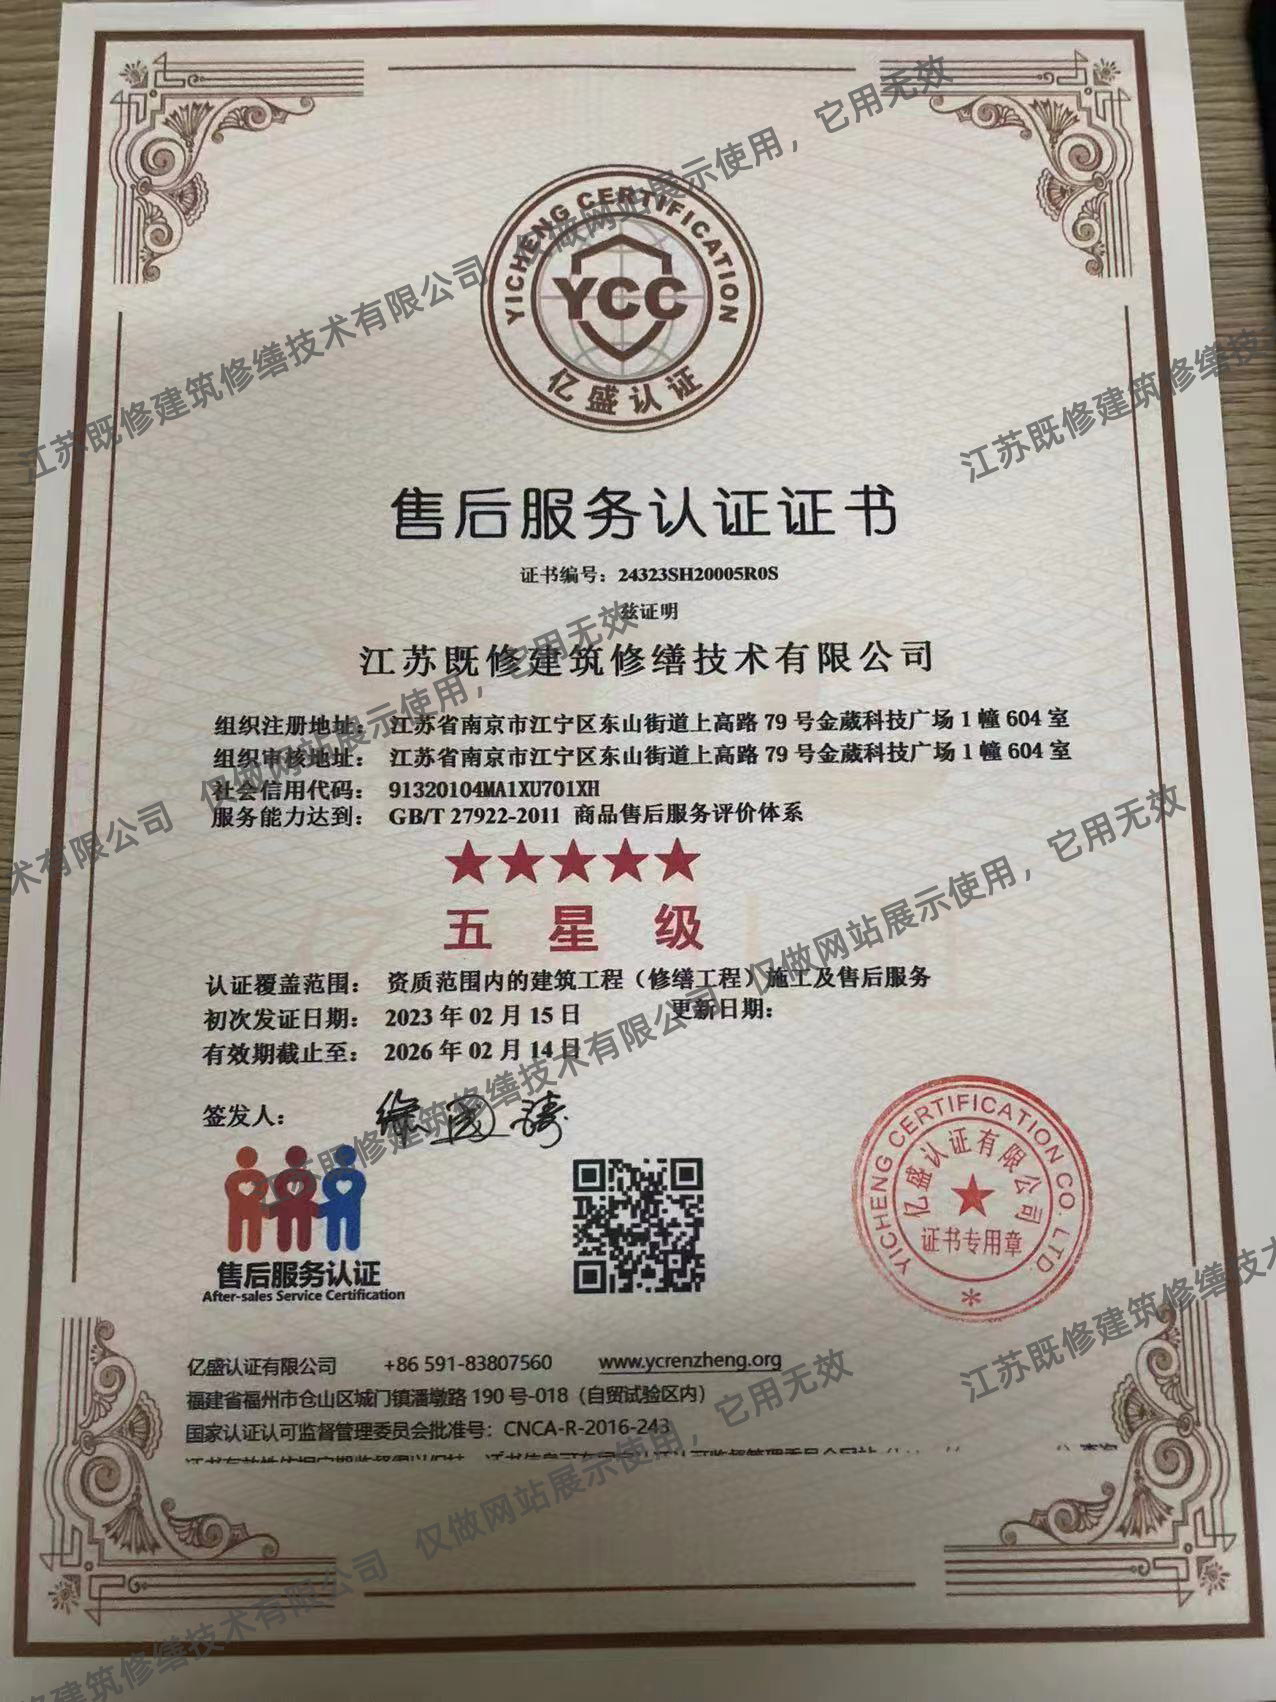 广州商品售后服务评价体系认证